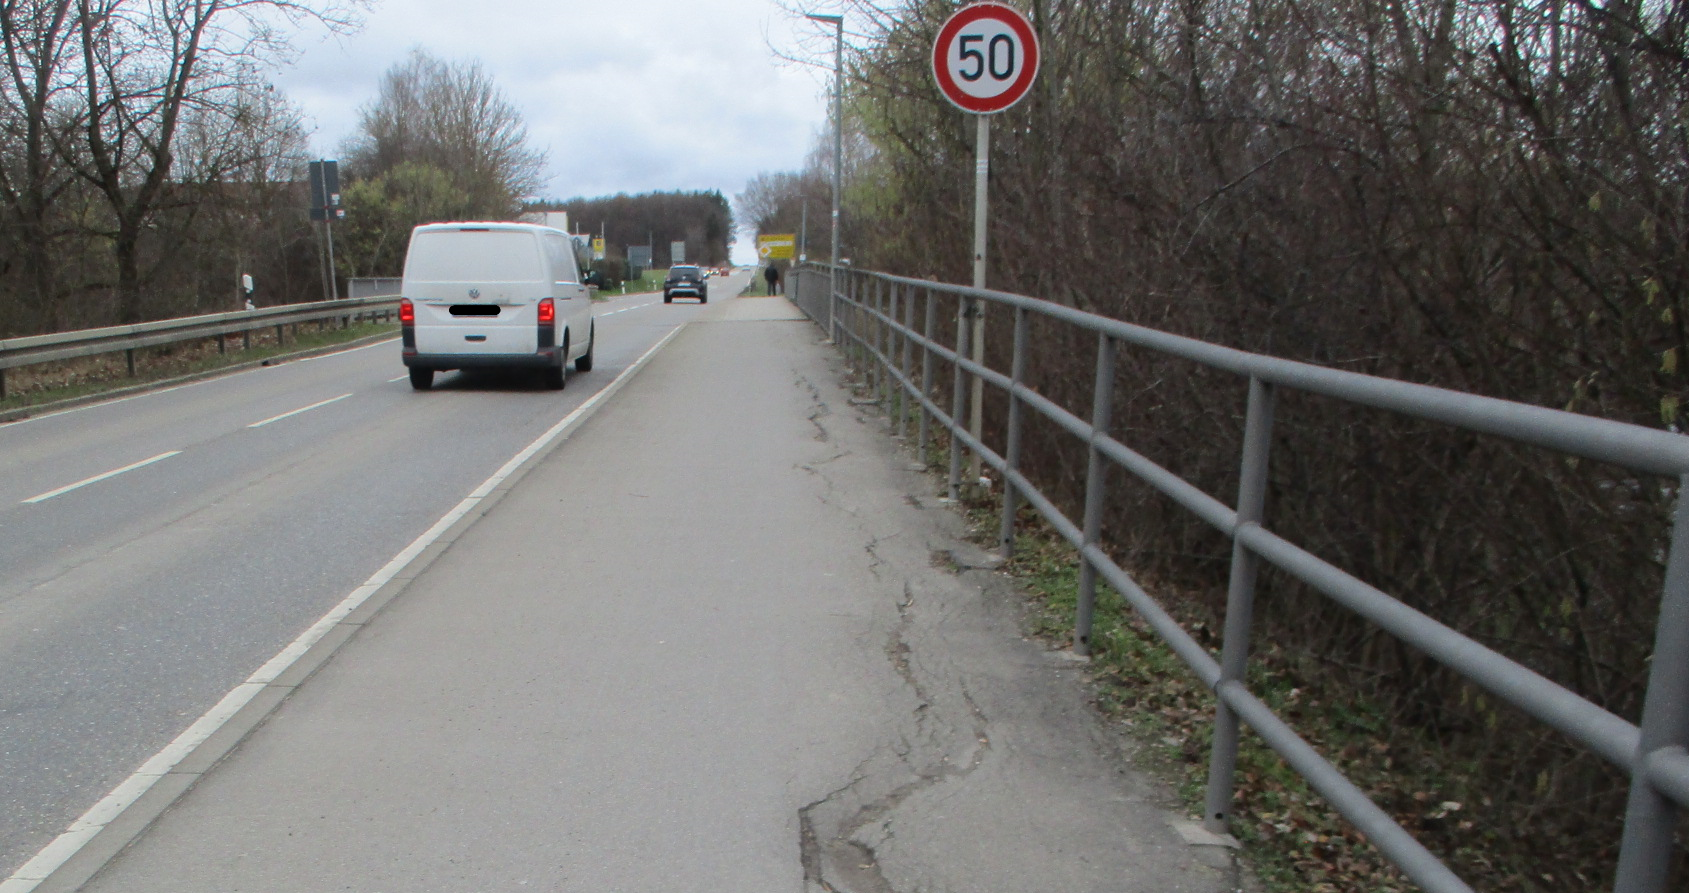 Das Bild zeigt die L 374 bei Riederich; Leitplanken, sanierungsbedürftiger Radweg, Fahrzeuge, Verkehrsschild